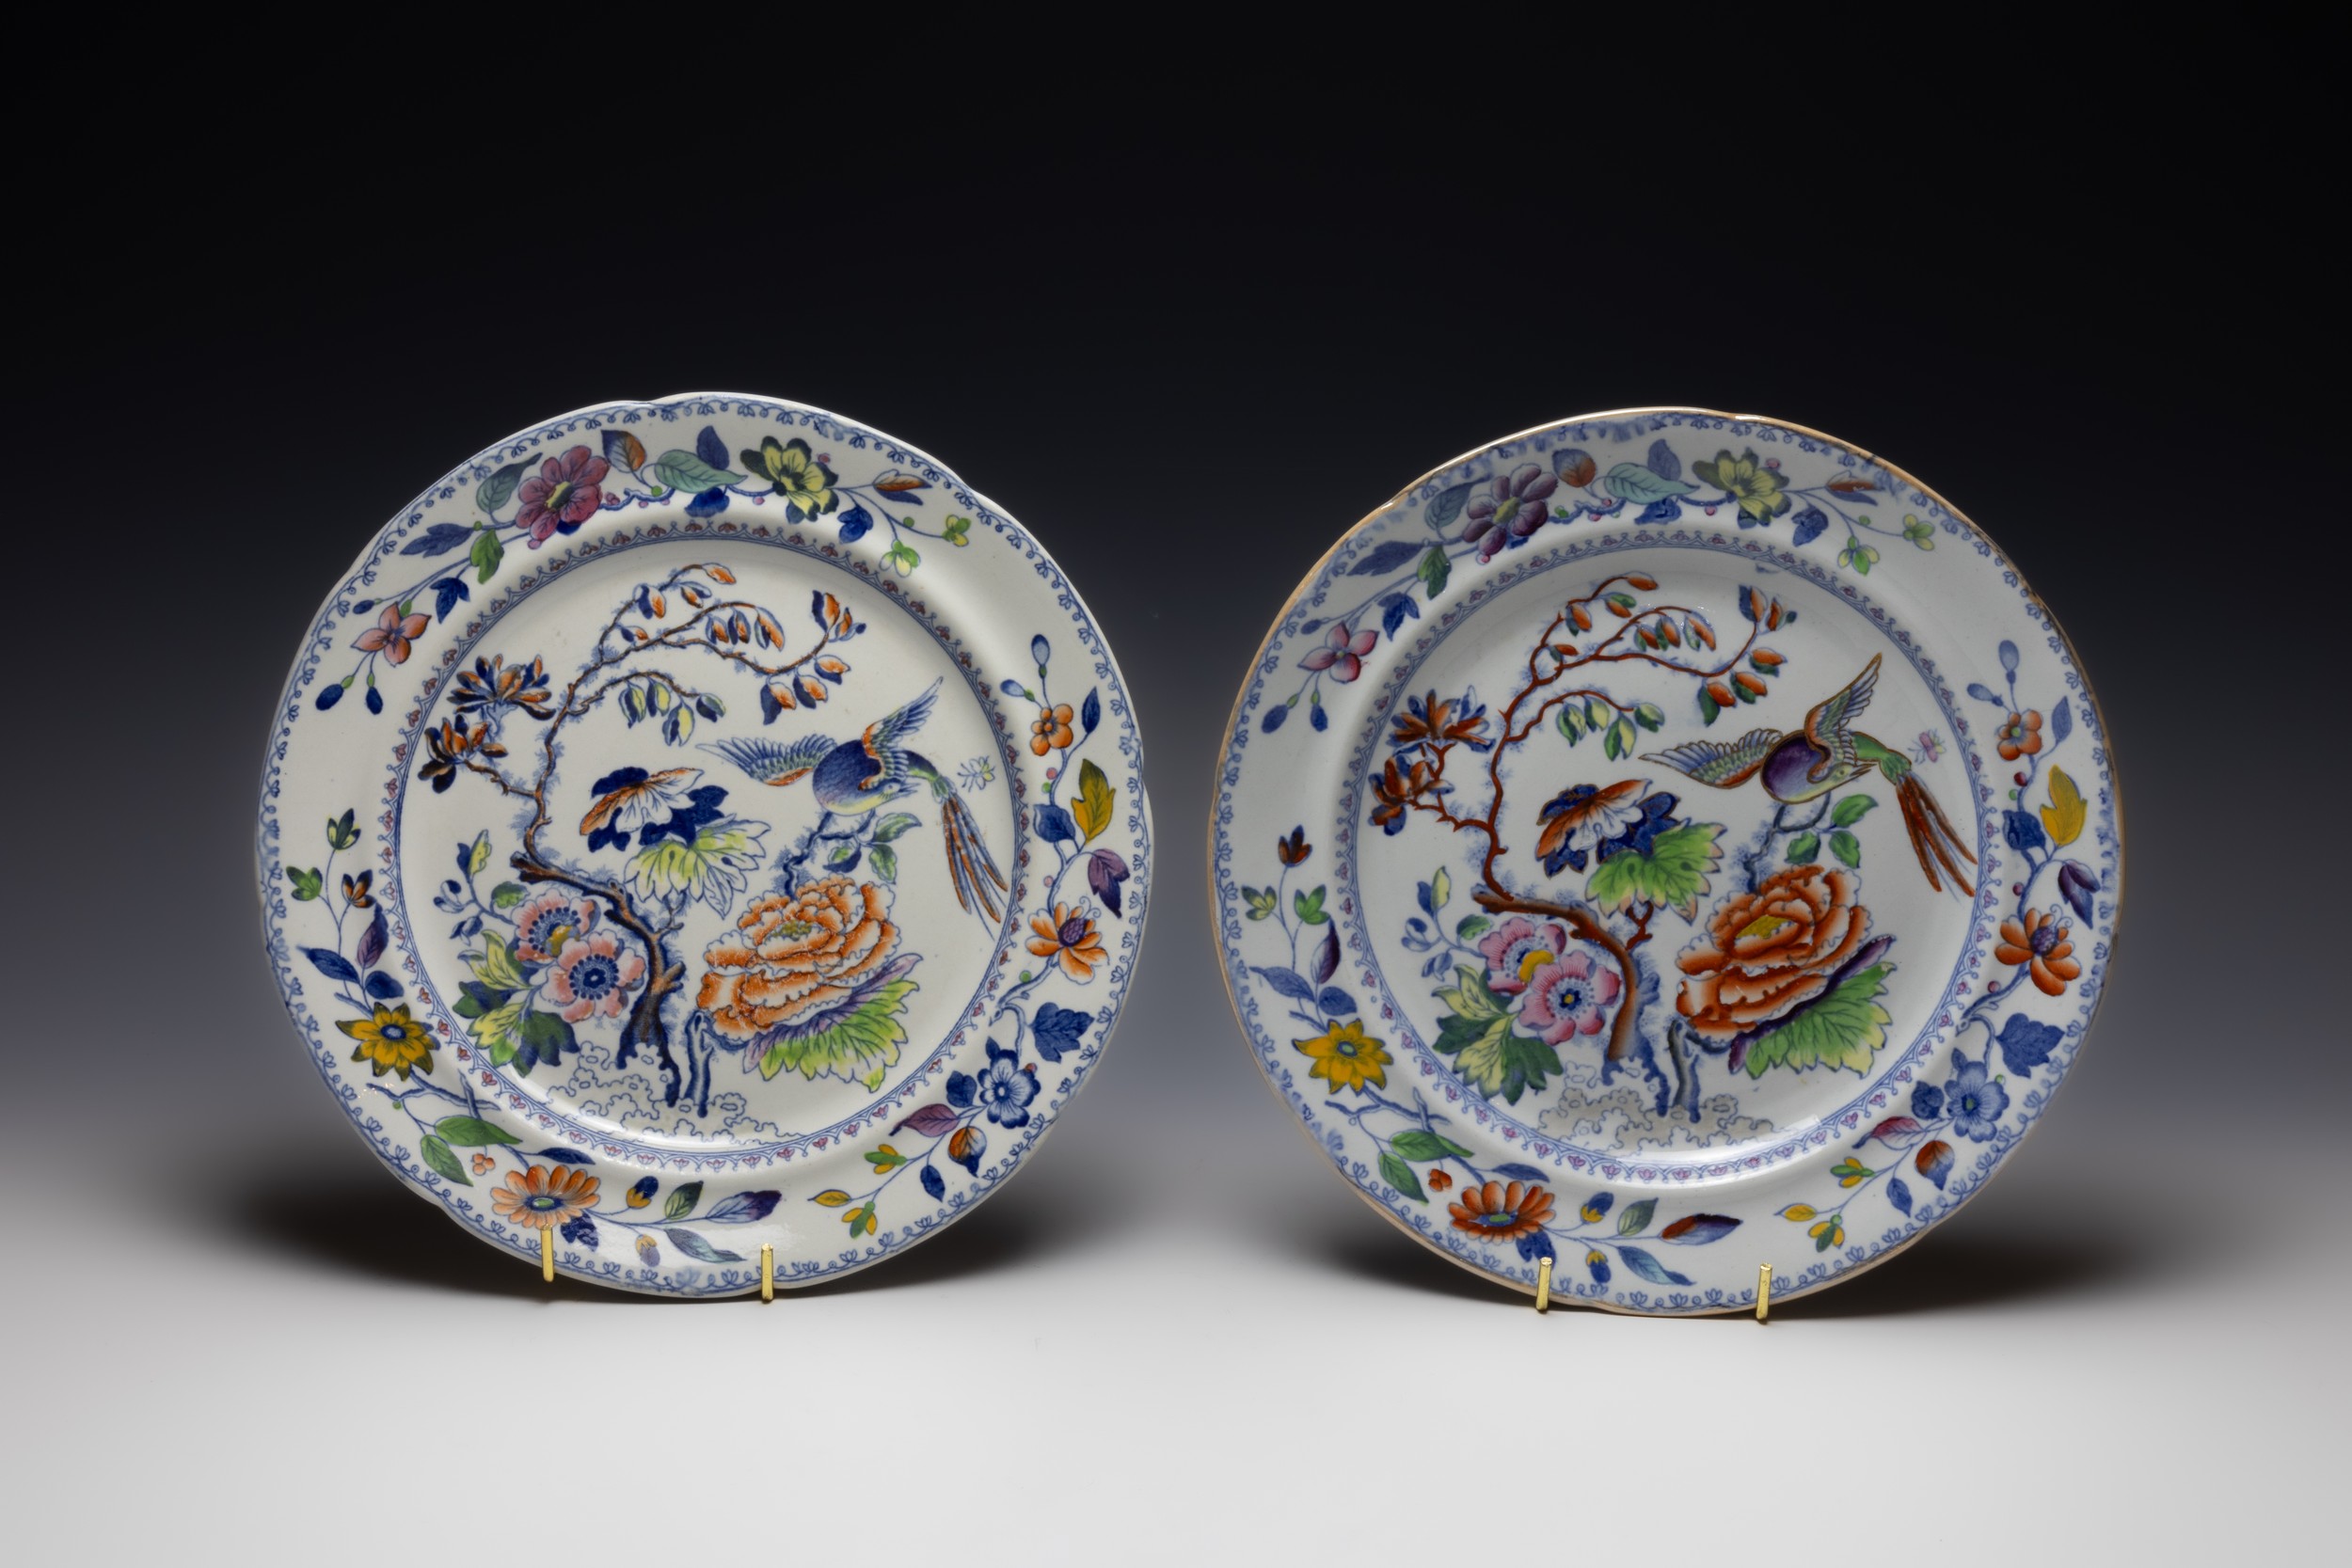 A Pair of Victorian Davenport Porcelain Plates.

D: Approximately 24.3cm 